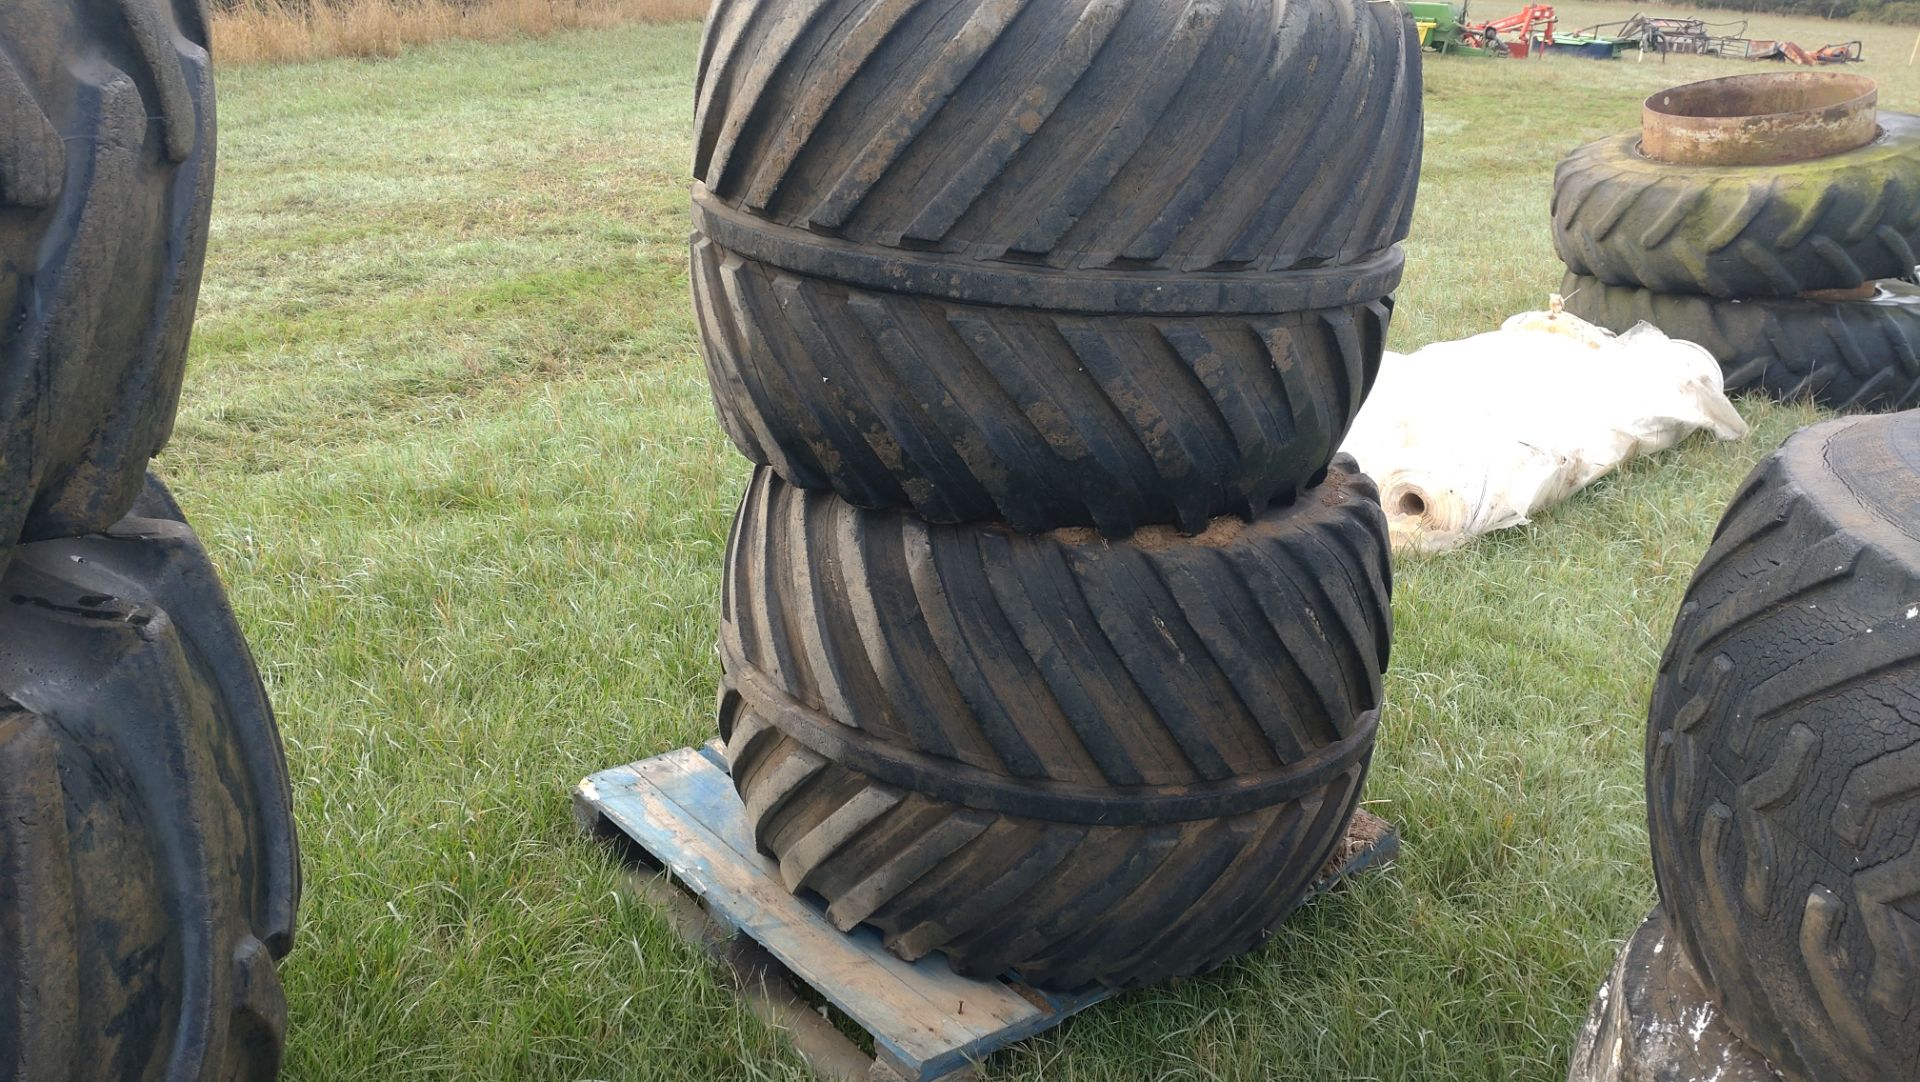 Pair of Terra tyres